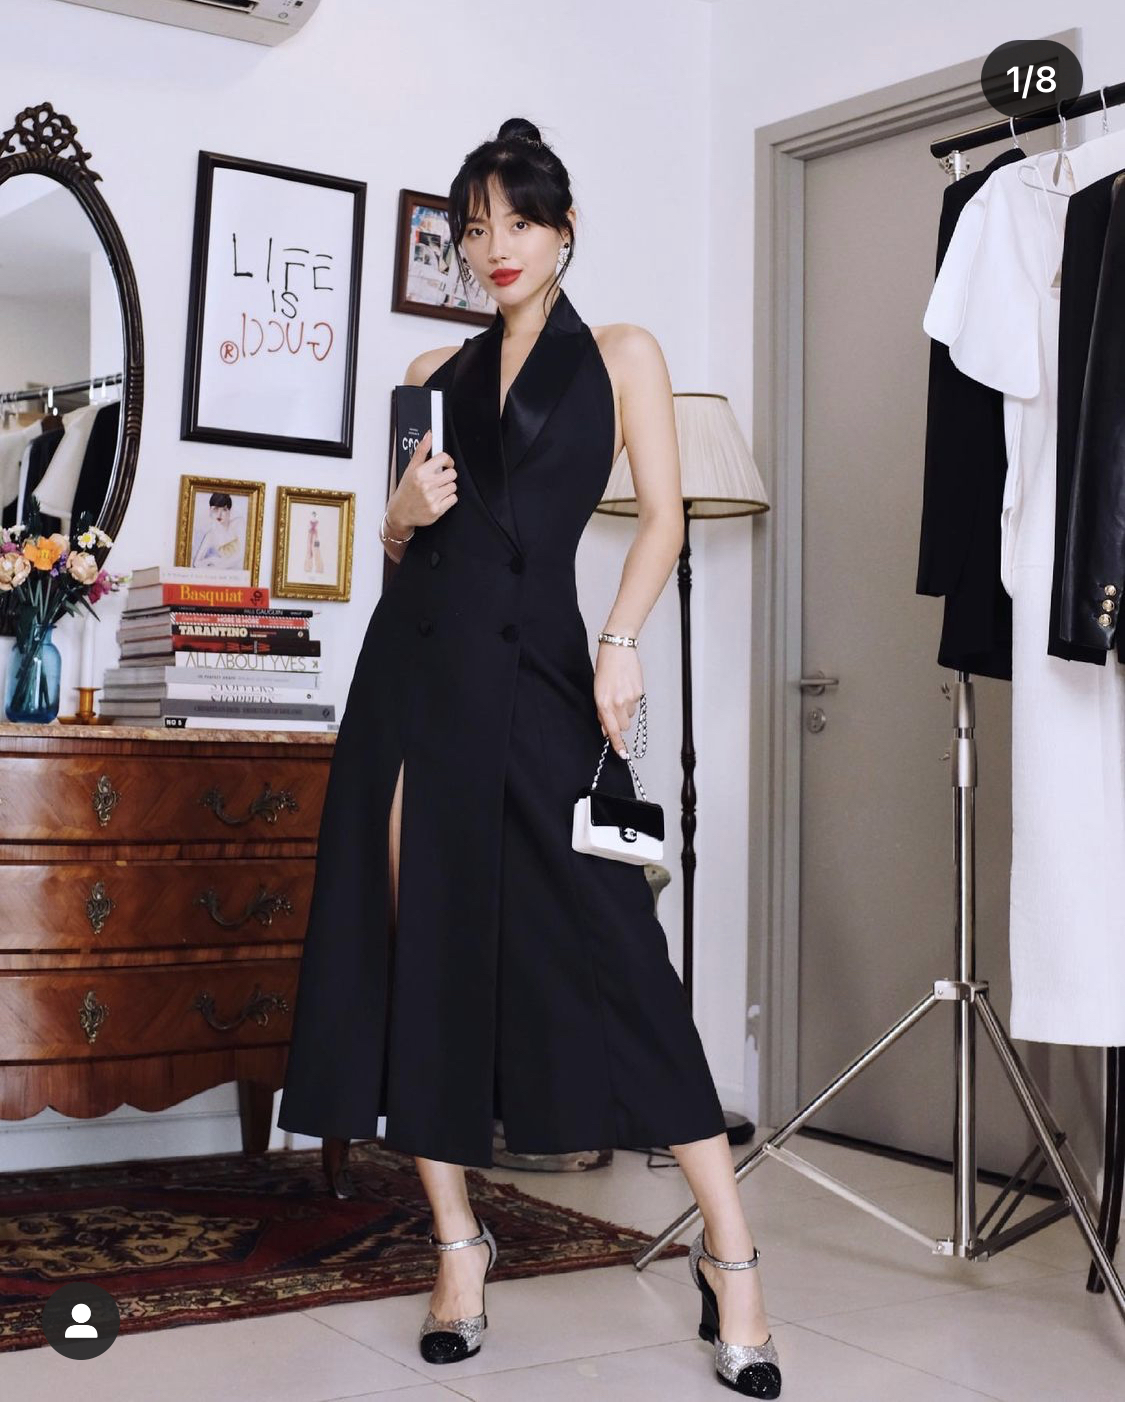 Đối lập hoàn toàn với outfit trên là sự tinh tế và tối giản, khí chất của một cô nàng thanh lịch. Đầm vest đen tuyền chẳng còn nhàm chán với điểm nhấn túi Chanel mini bản phối nhị phân trắng - đen thu hút.